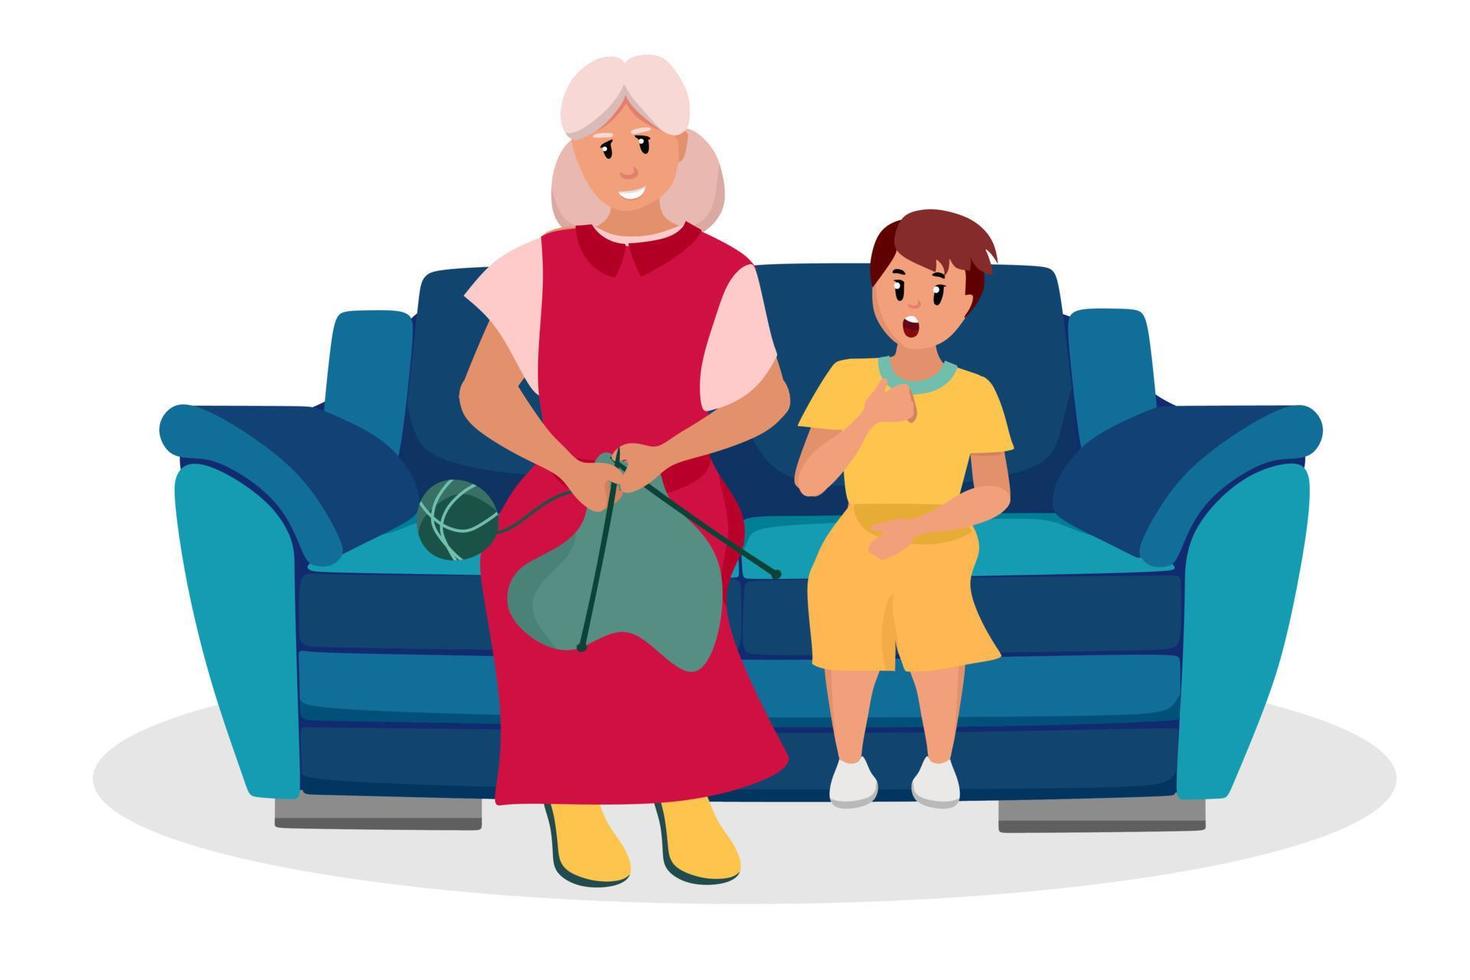 de oudere vrouw is een grootmoeder met haar kleinzoon op de bank. ouderen zijn stripfiguren. oude leeftijd. vectorillustratie van een vlakke stijl, geïsoleerd op een witte achtergrond vector